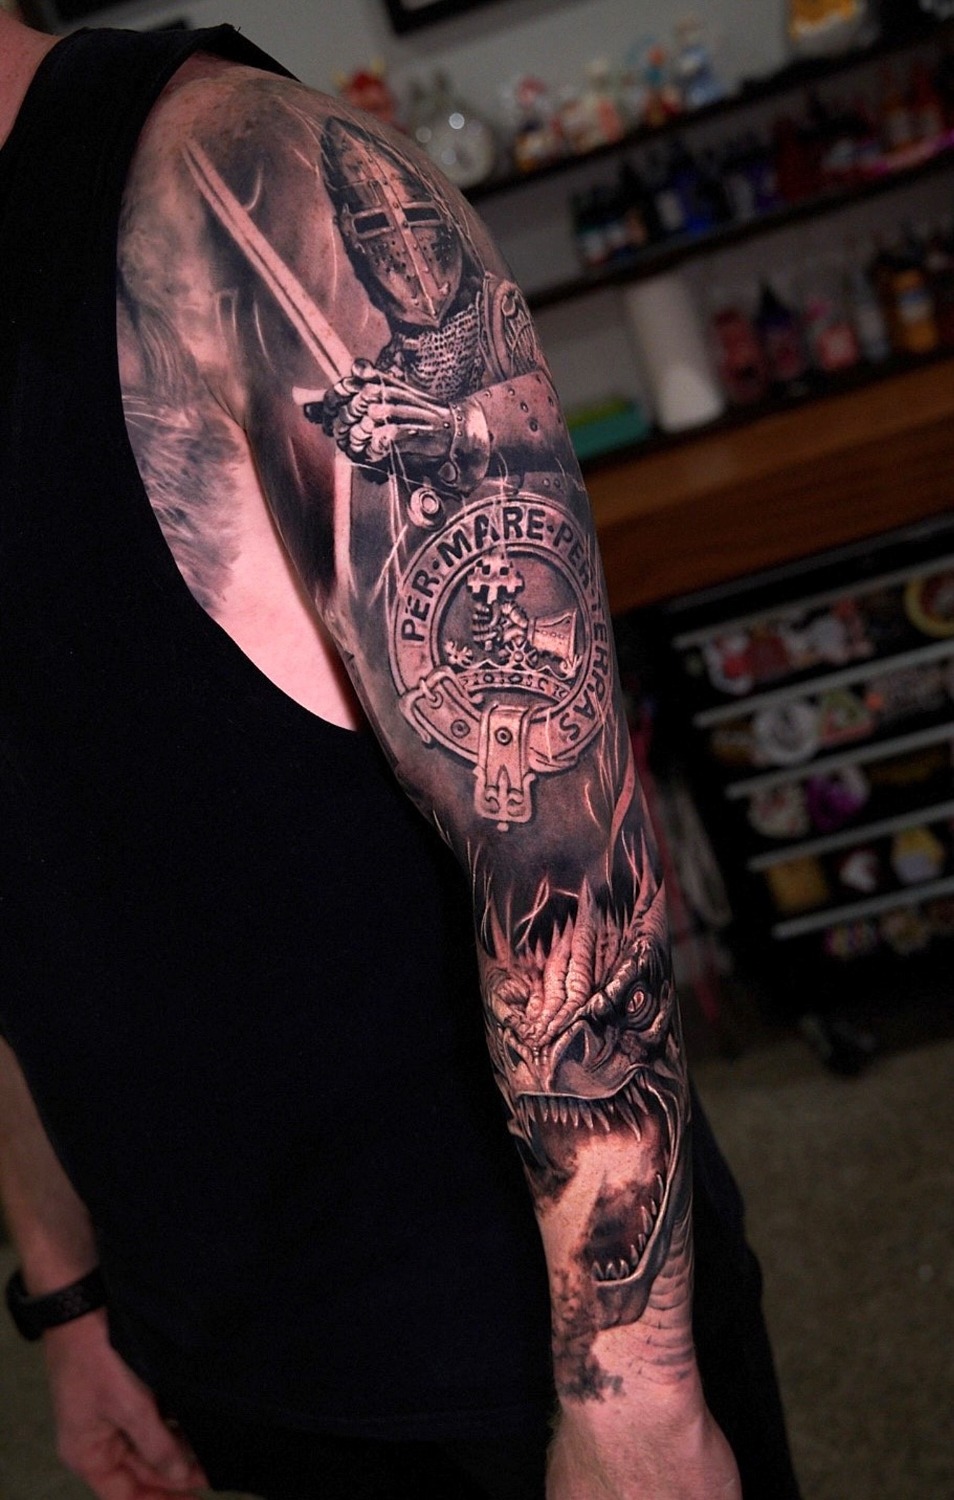 Gage Gonzalez - Tattoo Artist - Against All Odds Tattoos | LinkedIn